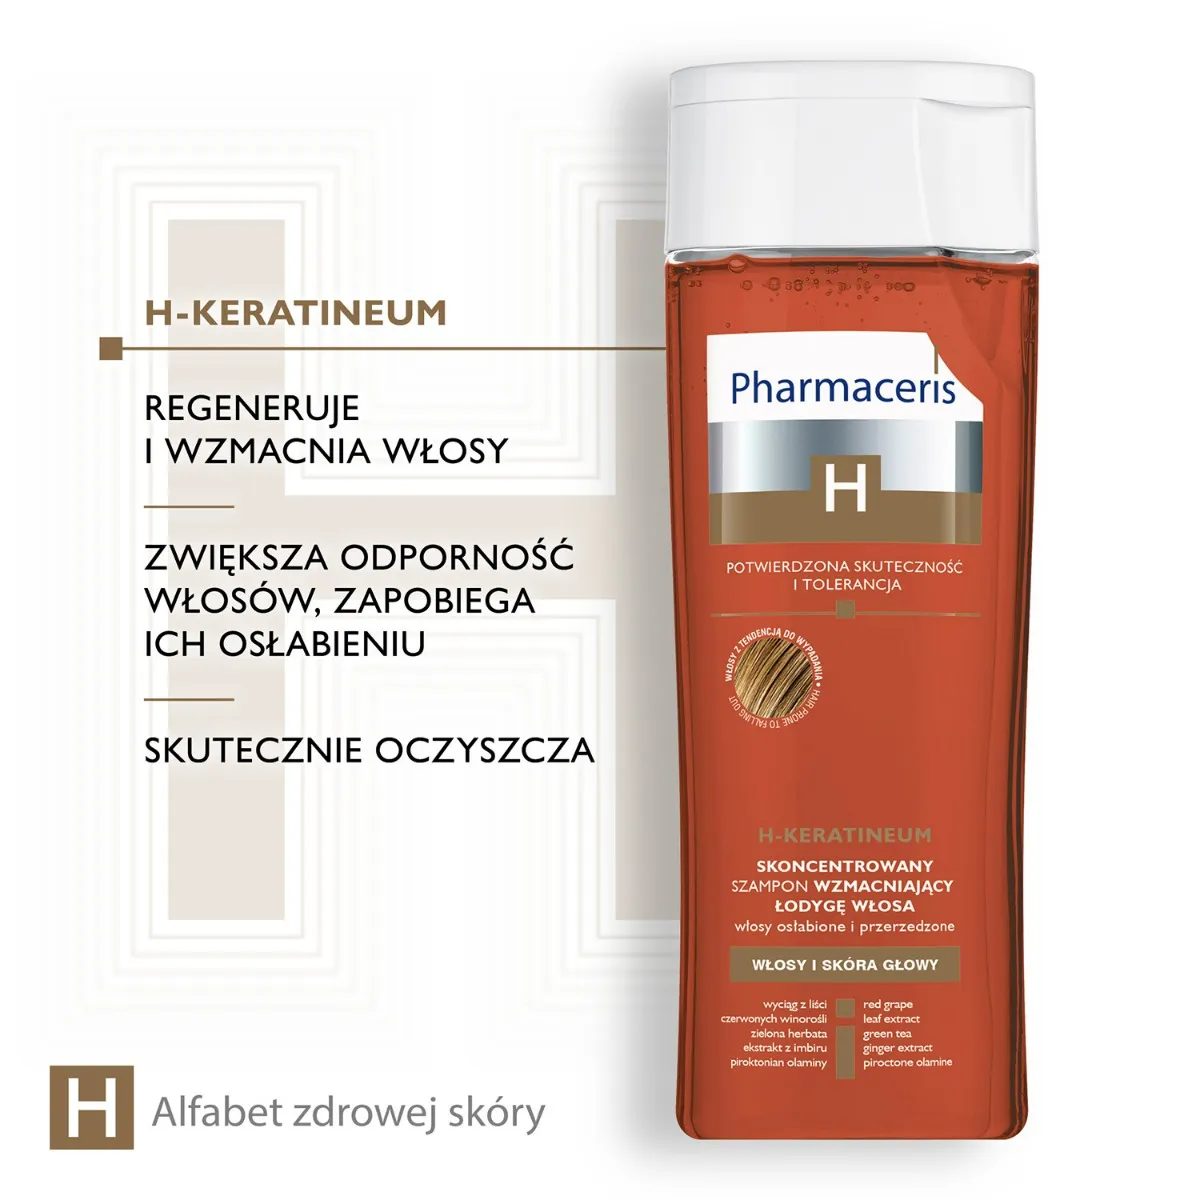 Pharmaceris H Keratineum, skoncentrowany szampon wzmacniający łodygę włosa do włosów osłabionych, 250 ml 